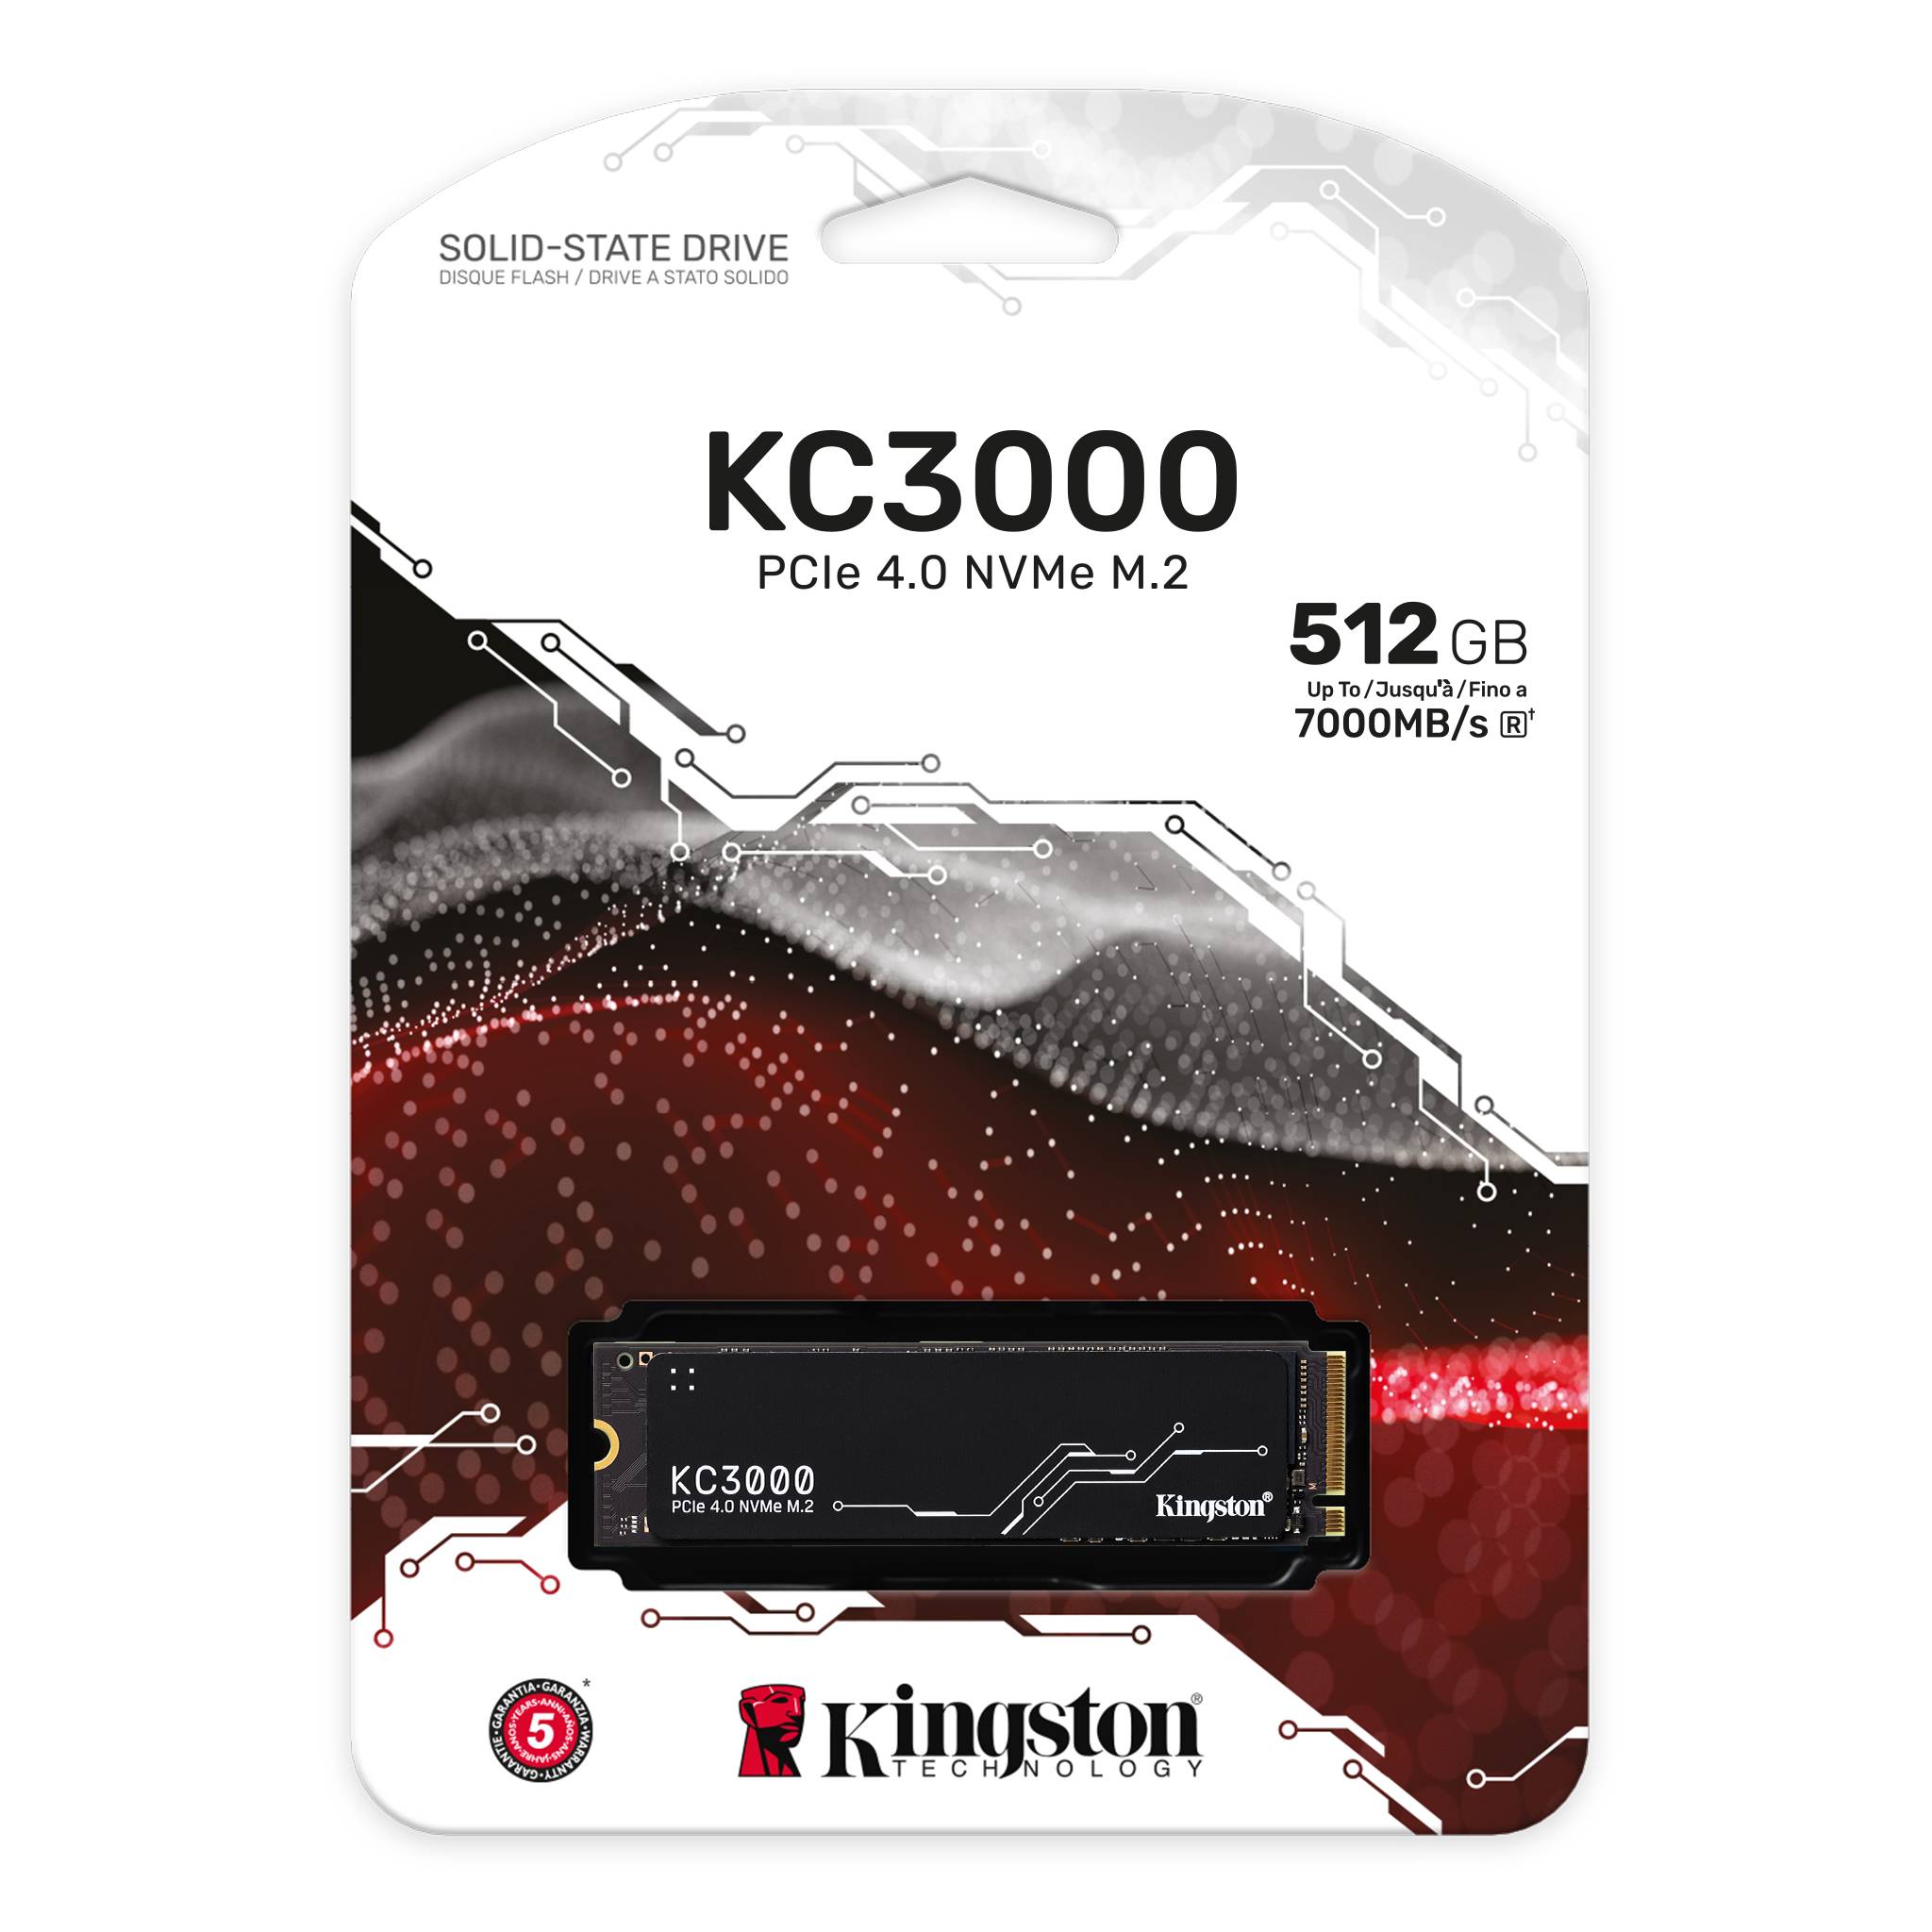 KINGSTON KC3000 512GB M.2 2280 NVME INTERNAL SSD - SKC3000S/512G